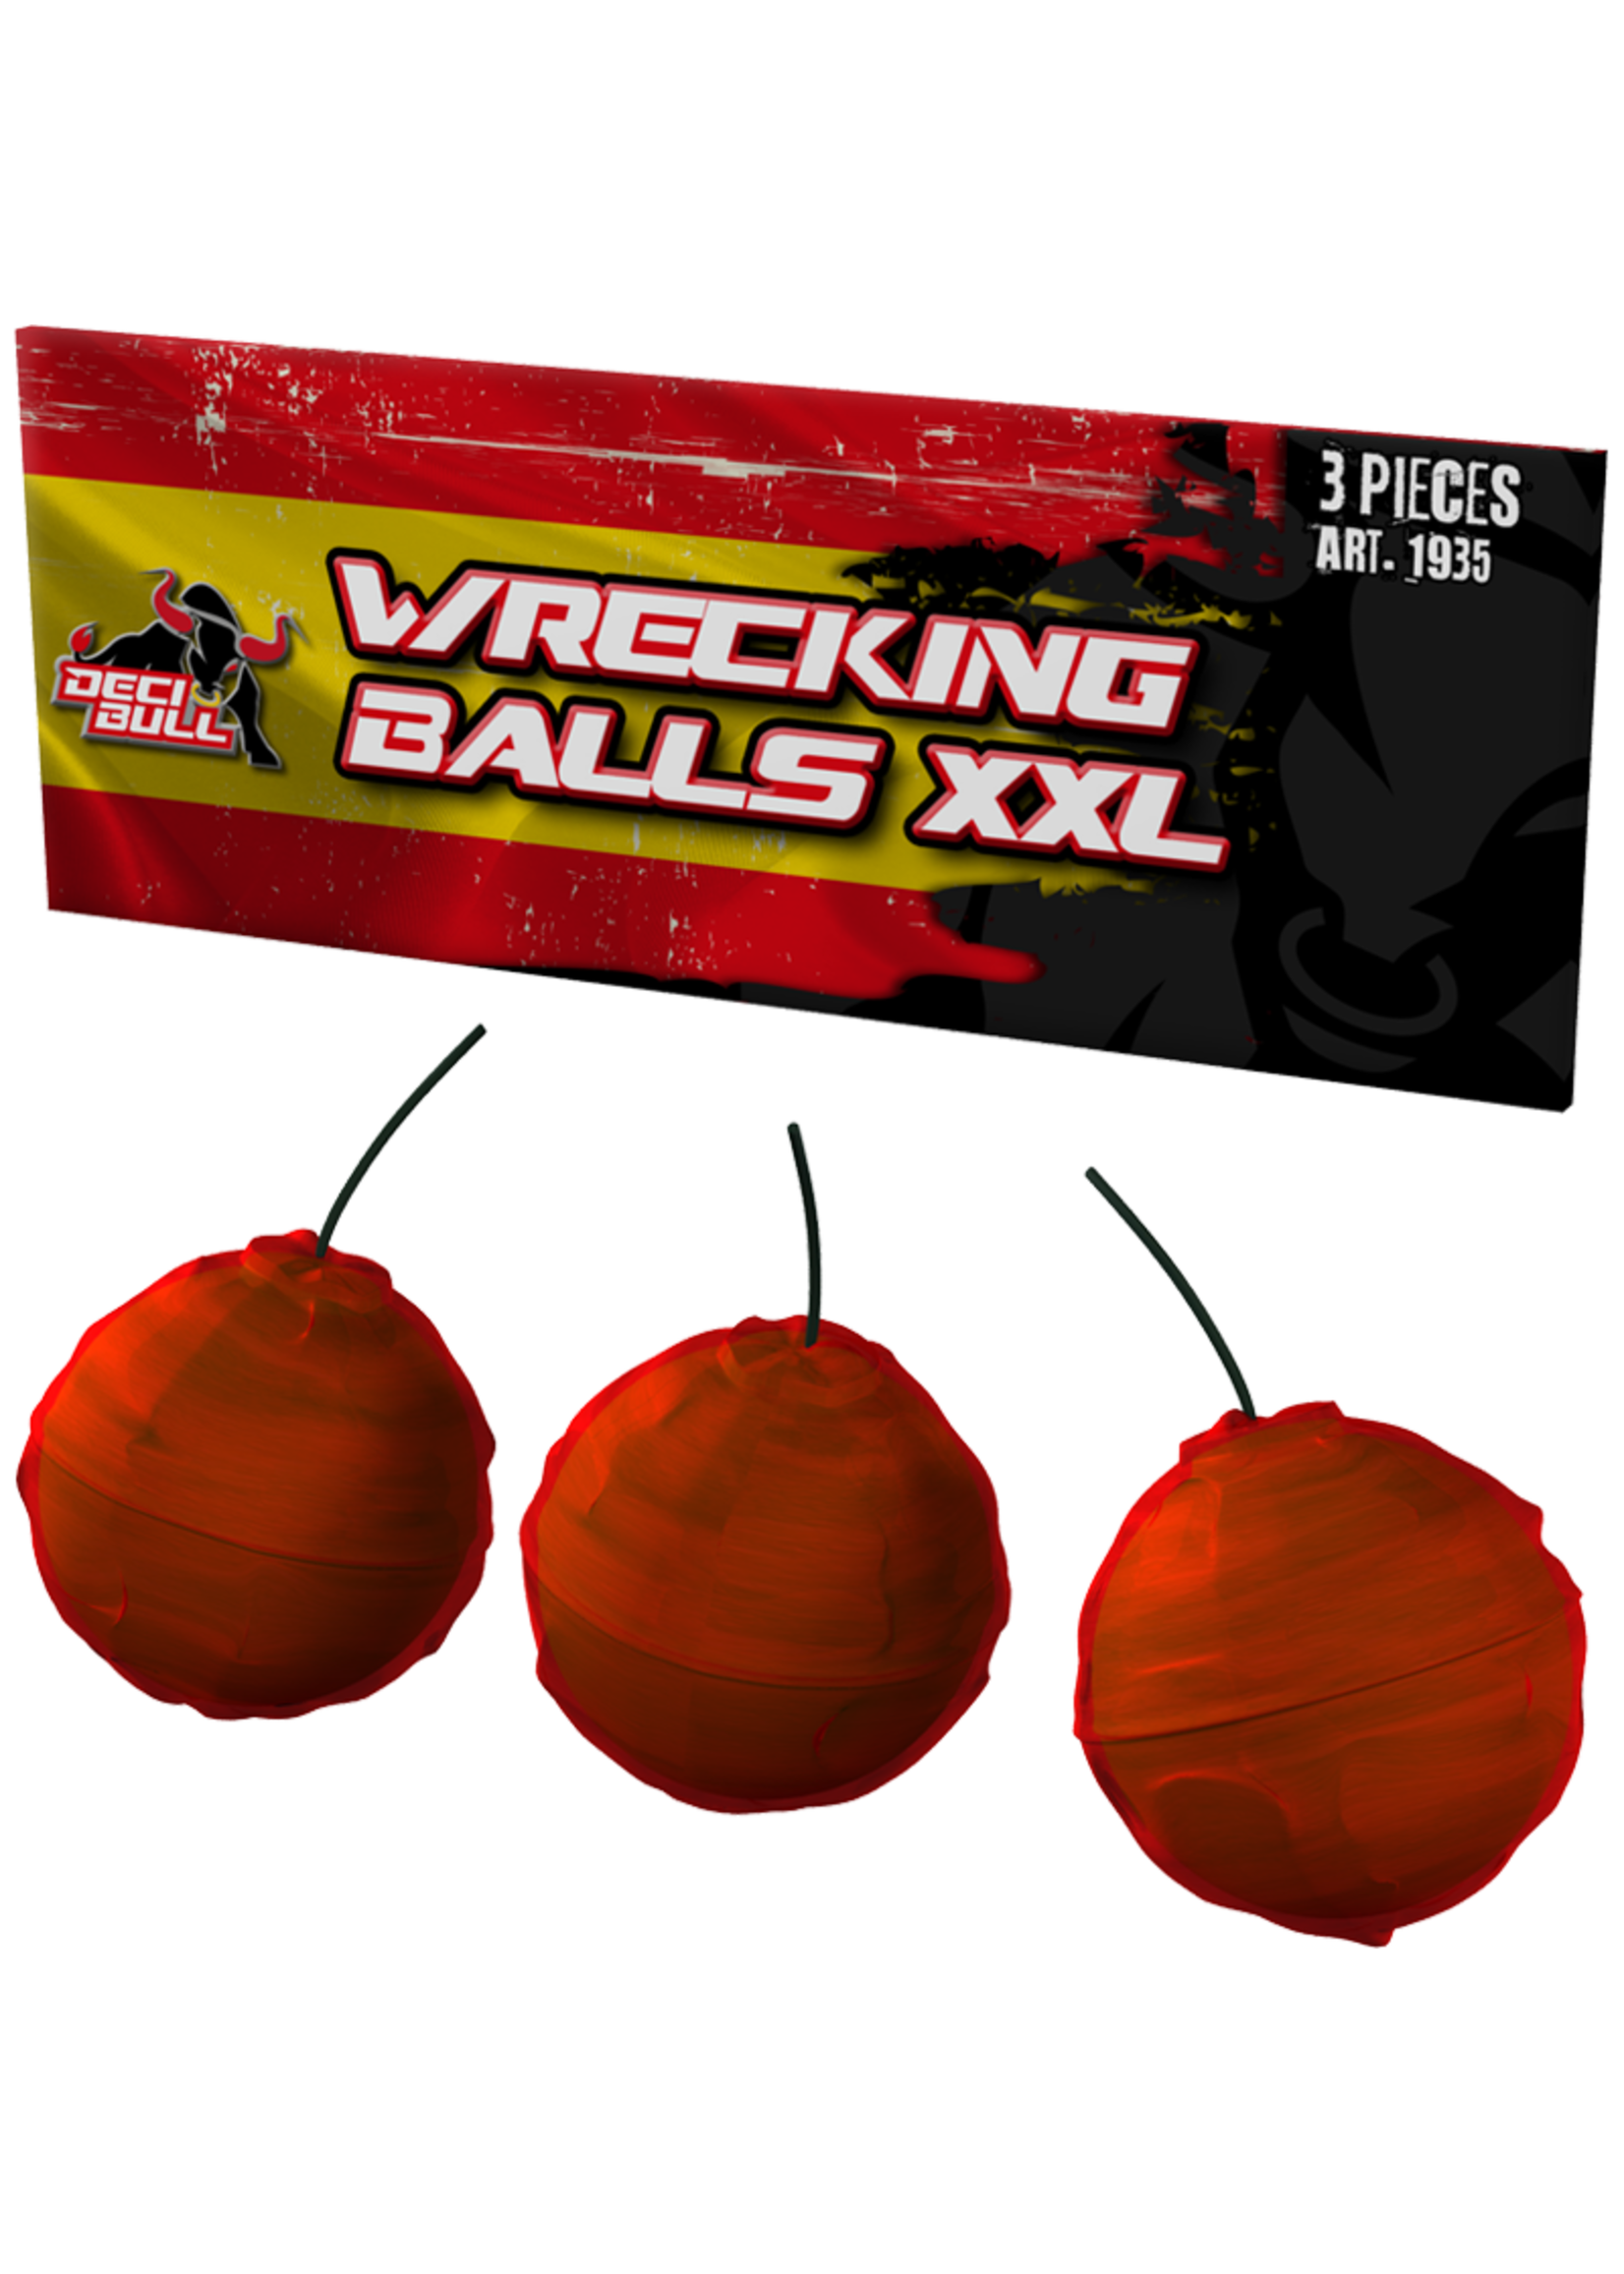 Vuurwerktotaal Wreckling Balls XXL